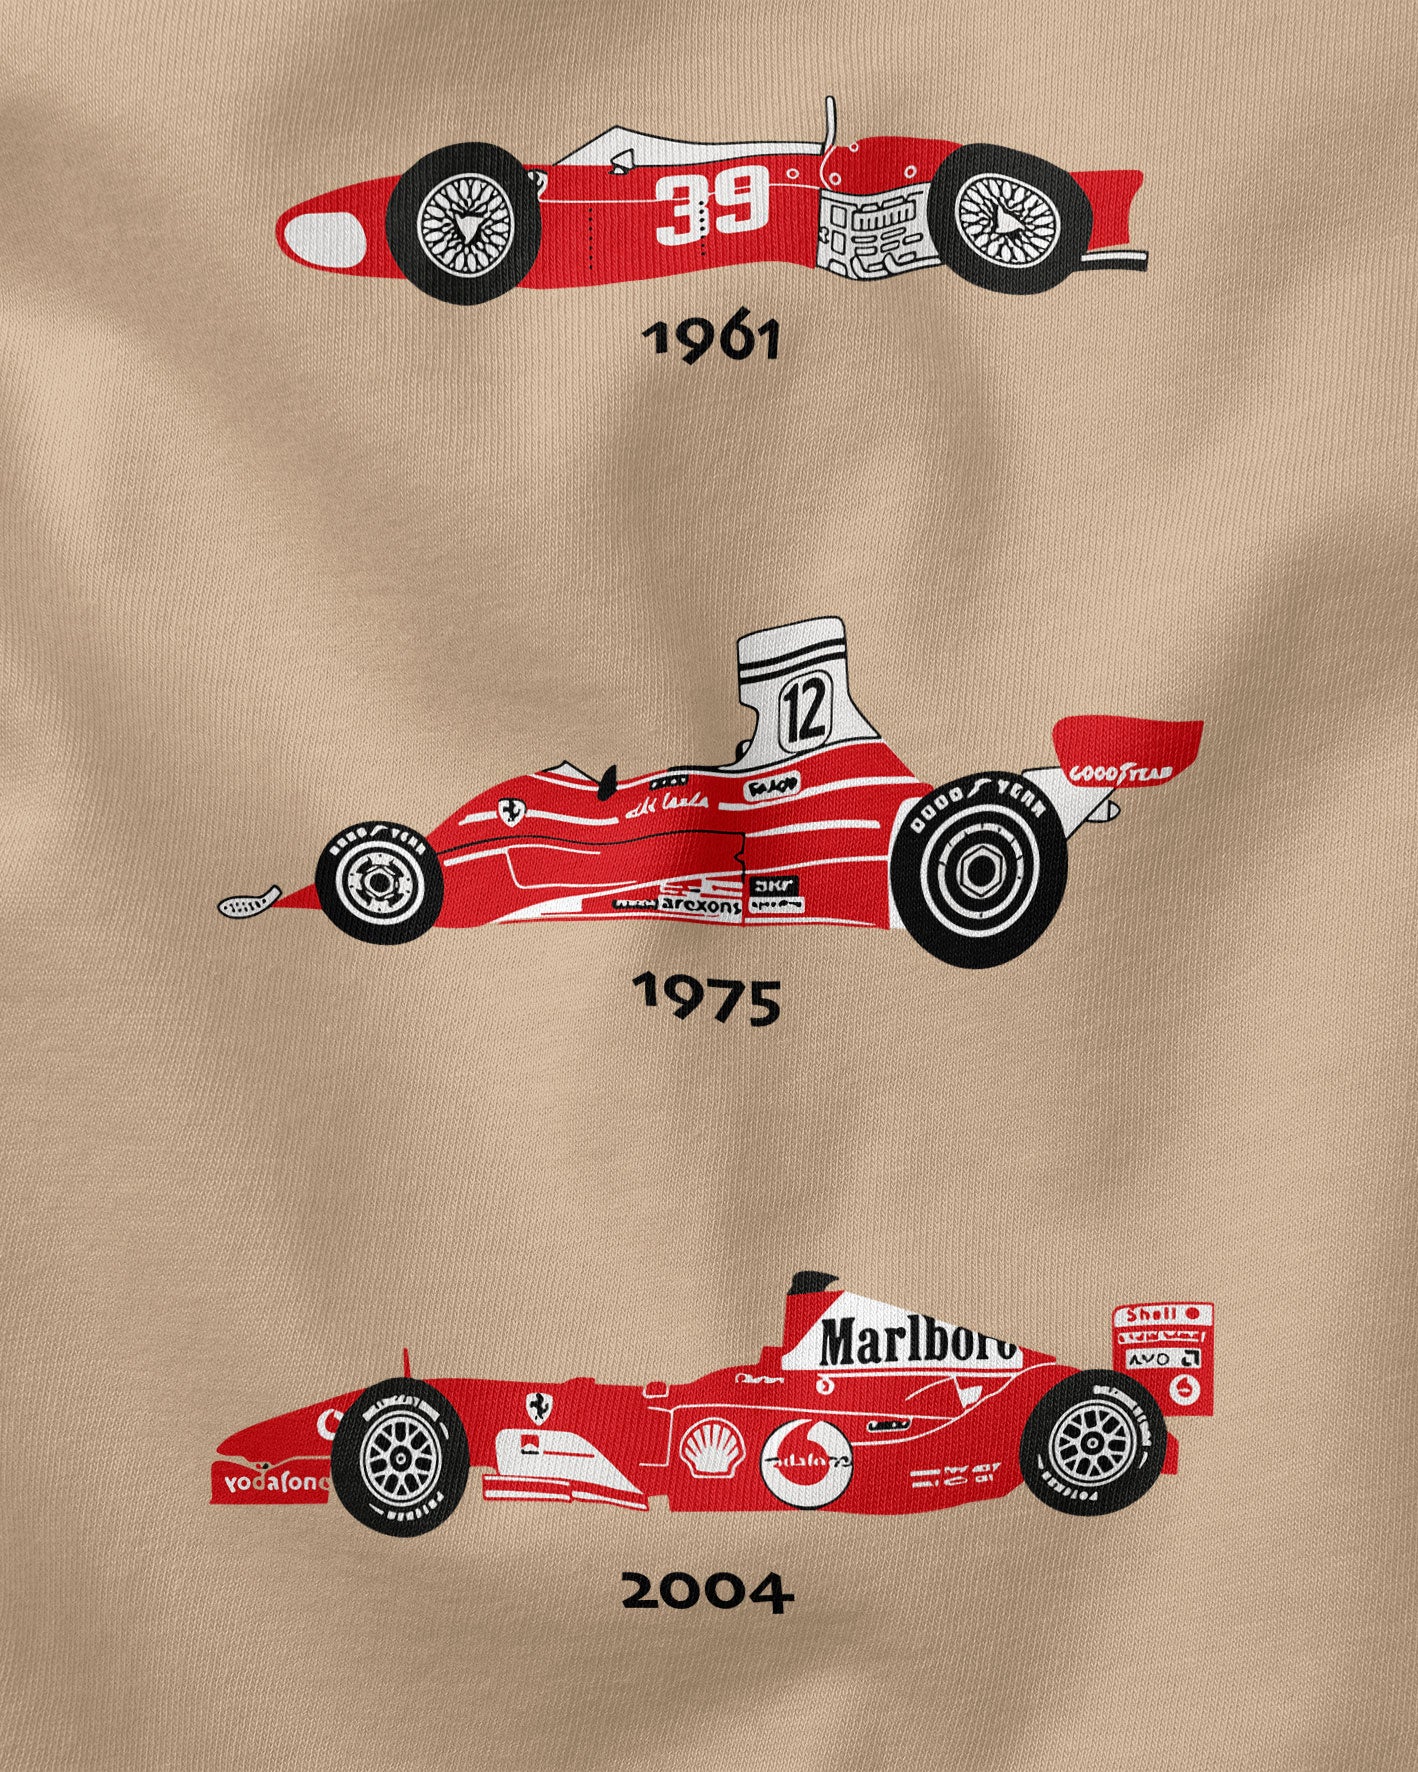 Camiseta Ferrari F1 Champions